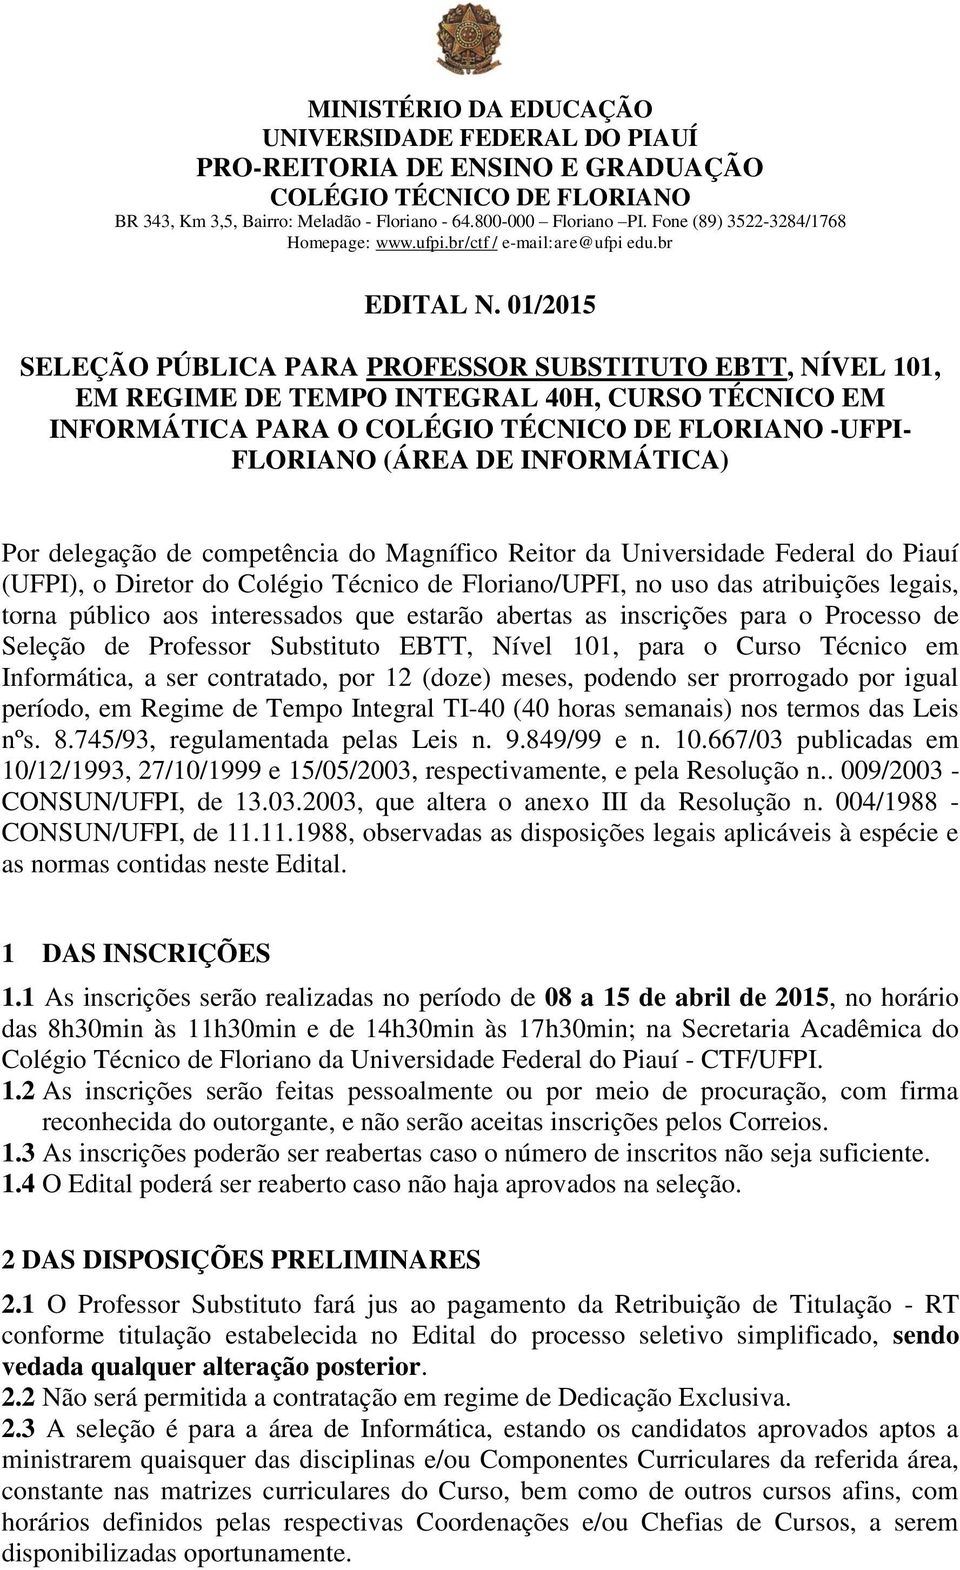 competência do Magnífico Reitor da Universidade Federal do Piauí (UFPI), o Diretor do Colégio Técnico de Floriano/UPFI, no uso das atribuições legais, torna público aos interessados que estarão